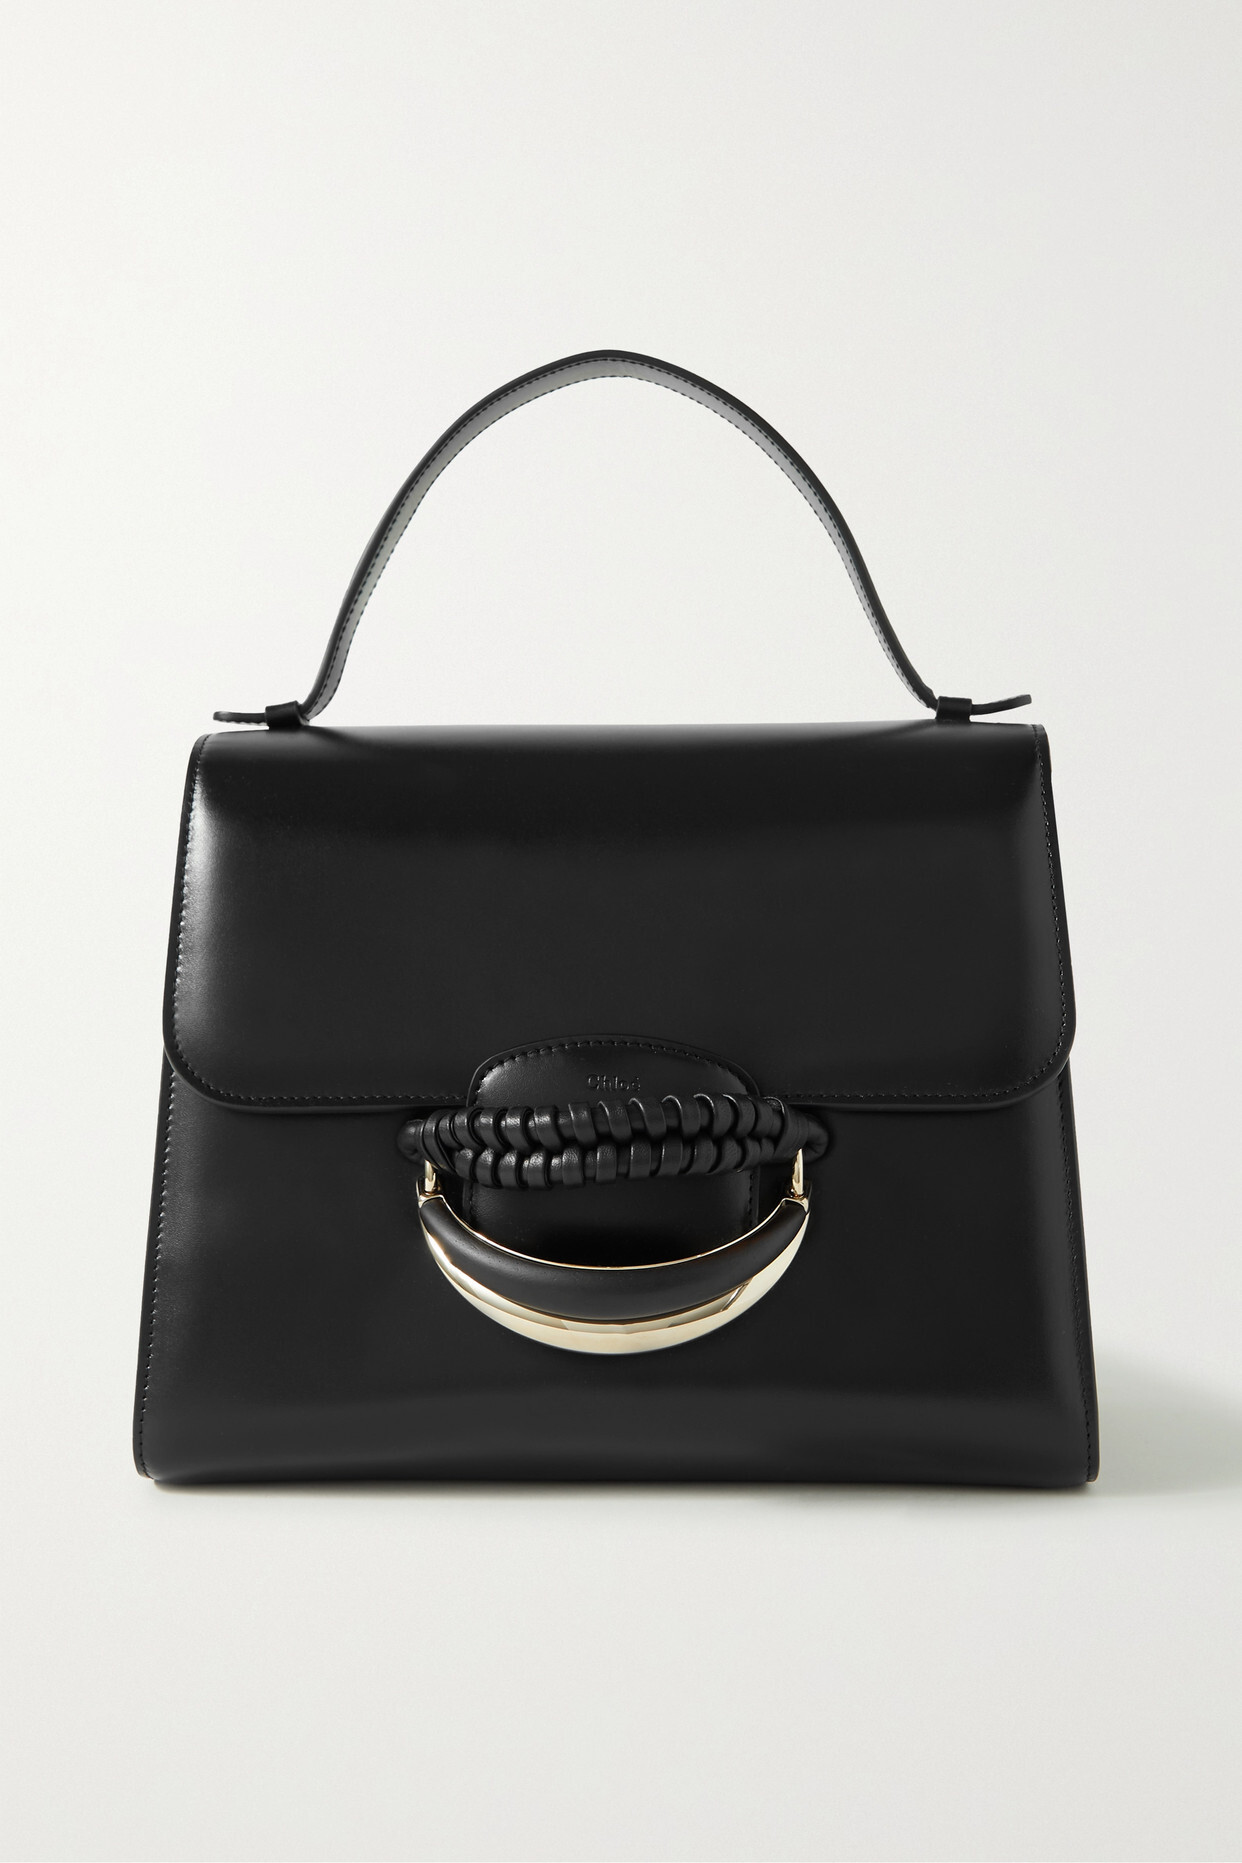 Chloé Chloé - Kattie Embellished Leather Shoulder Bag - Black